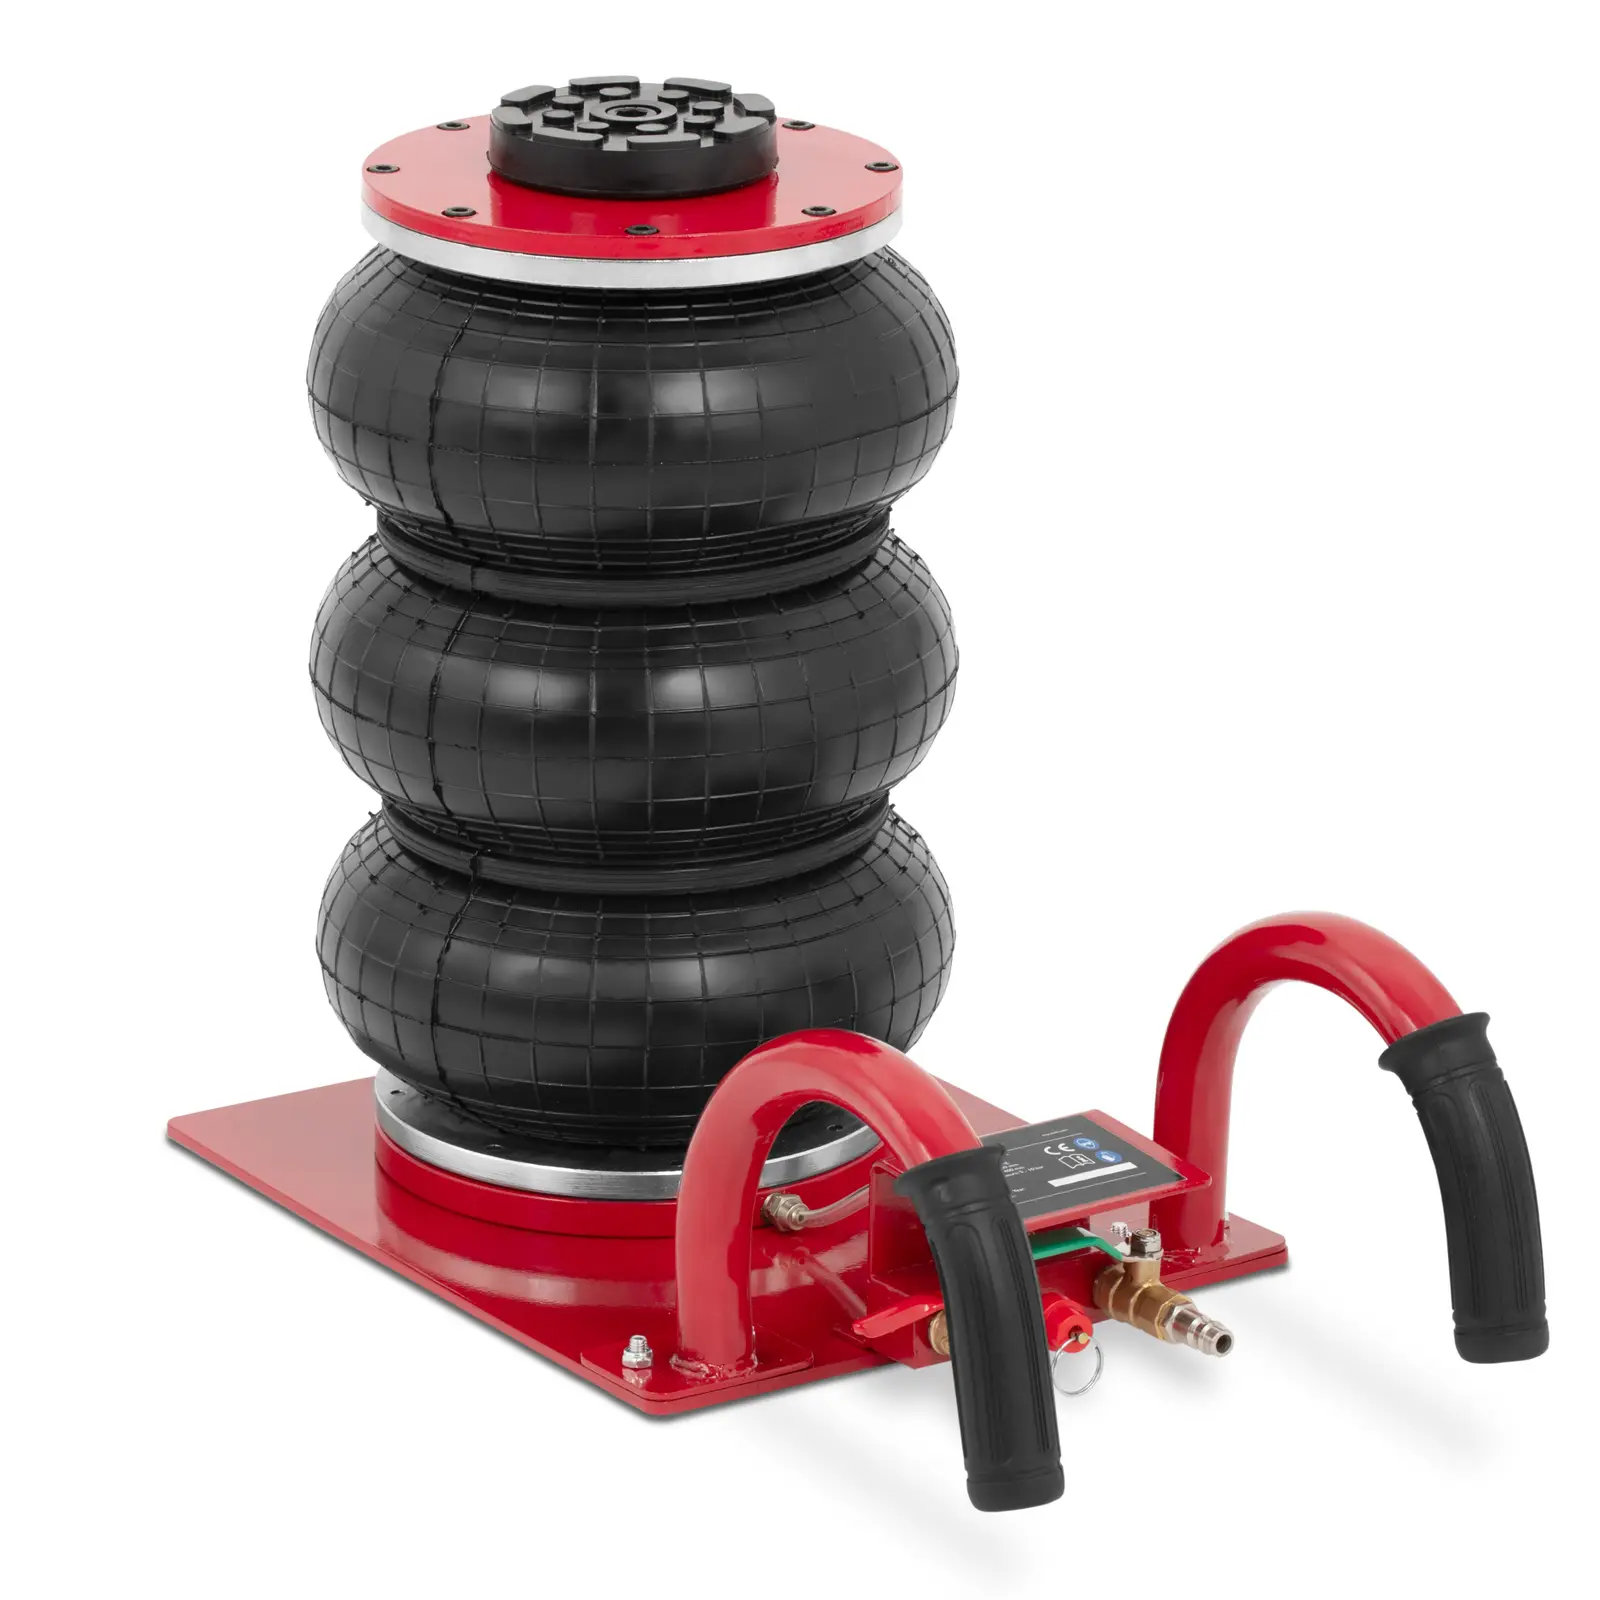 Macaco pneumático para carros - 3000 kg - altura de elevação 40 cm - duas pegas